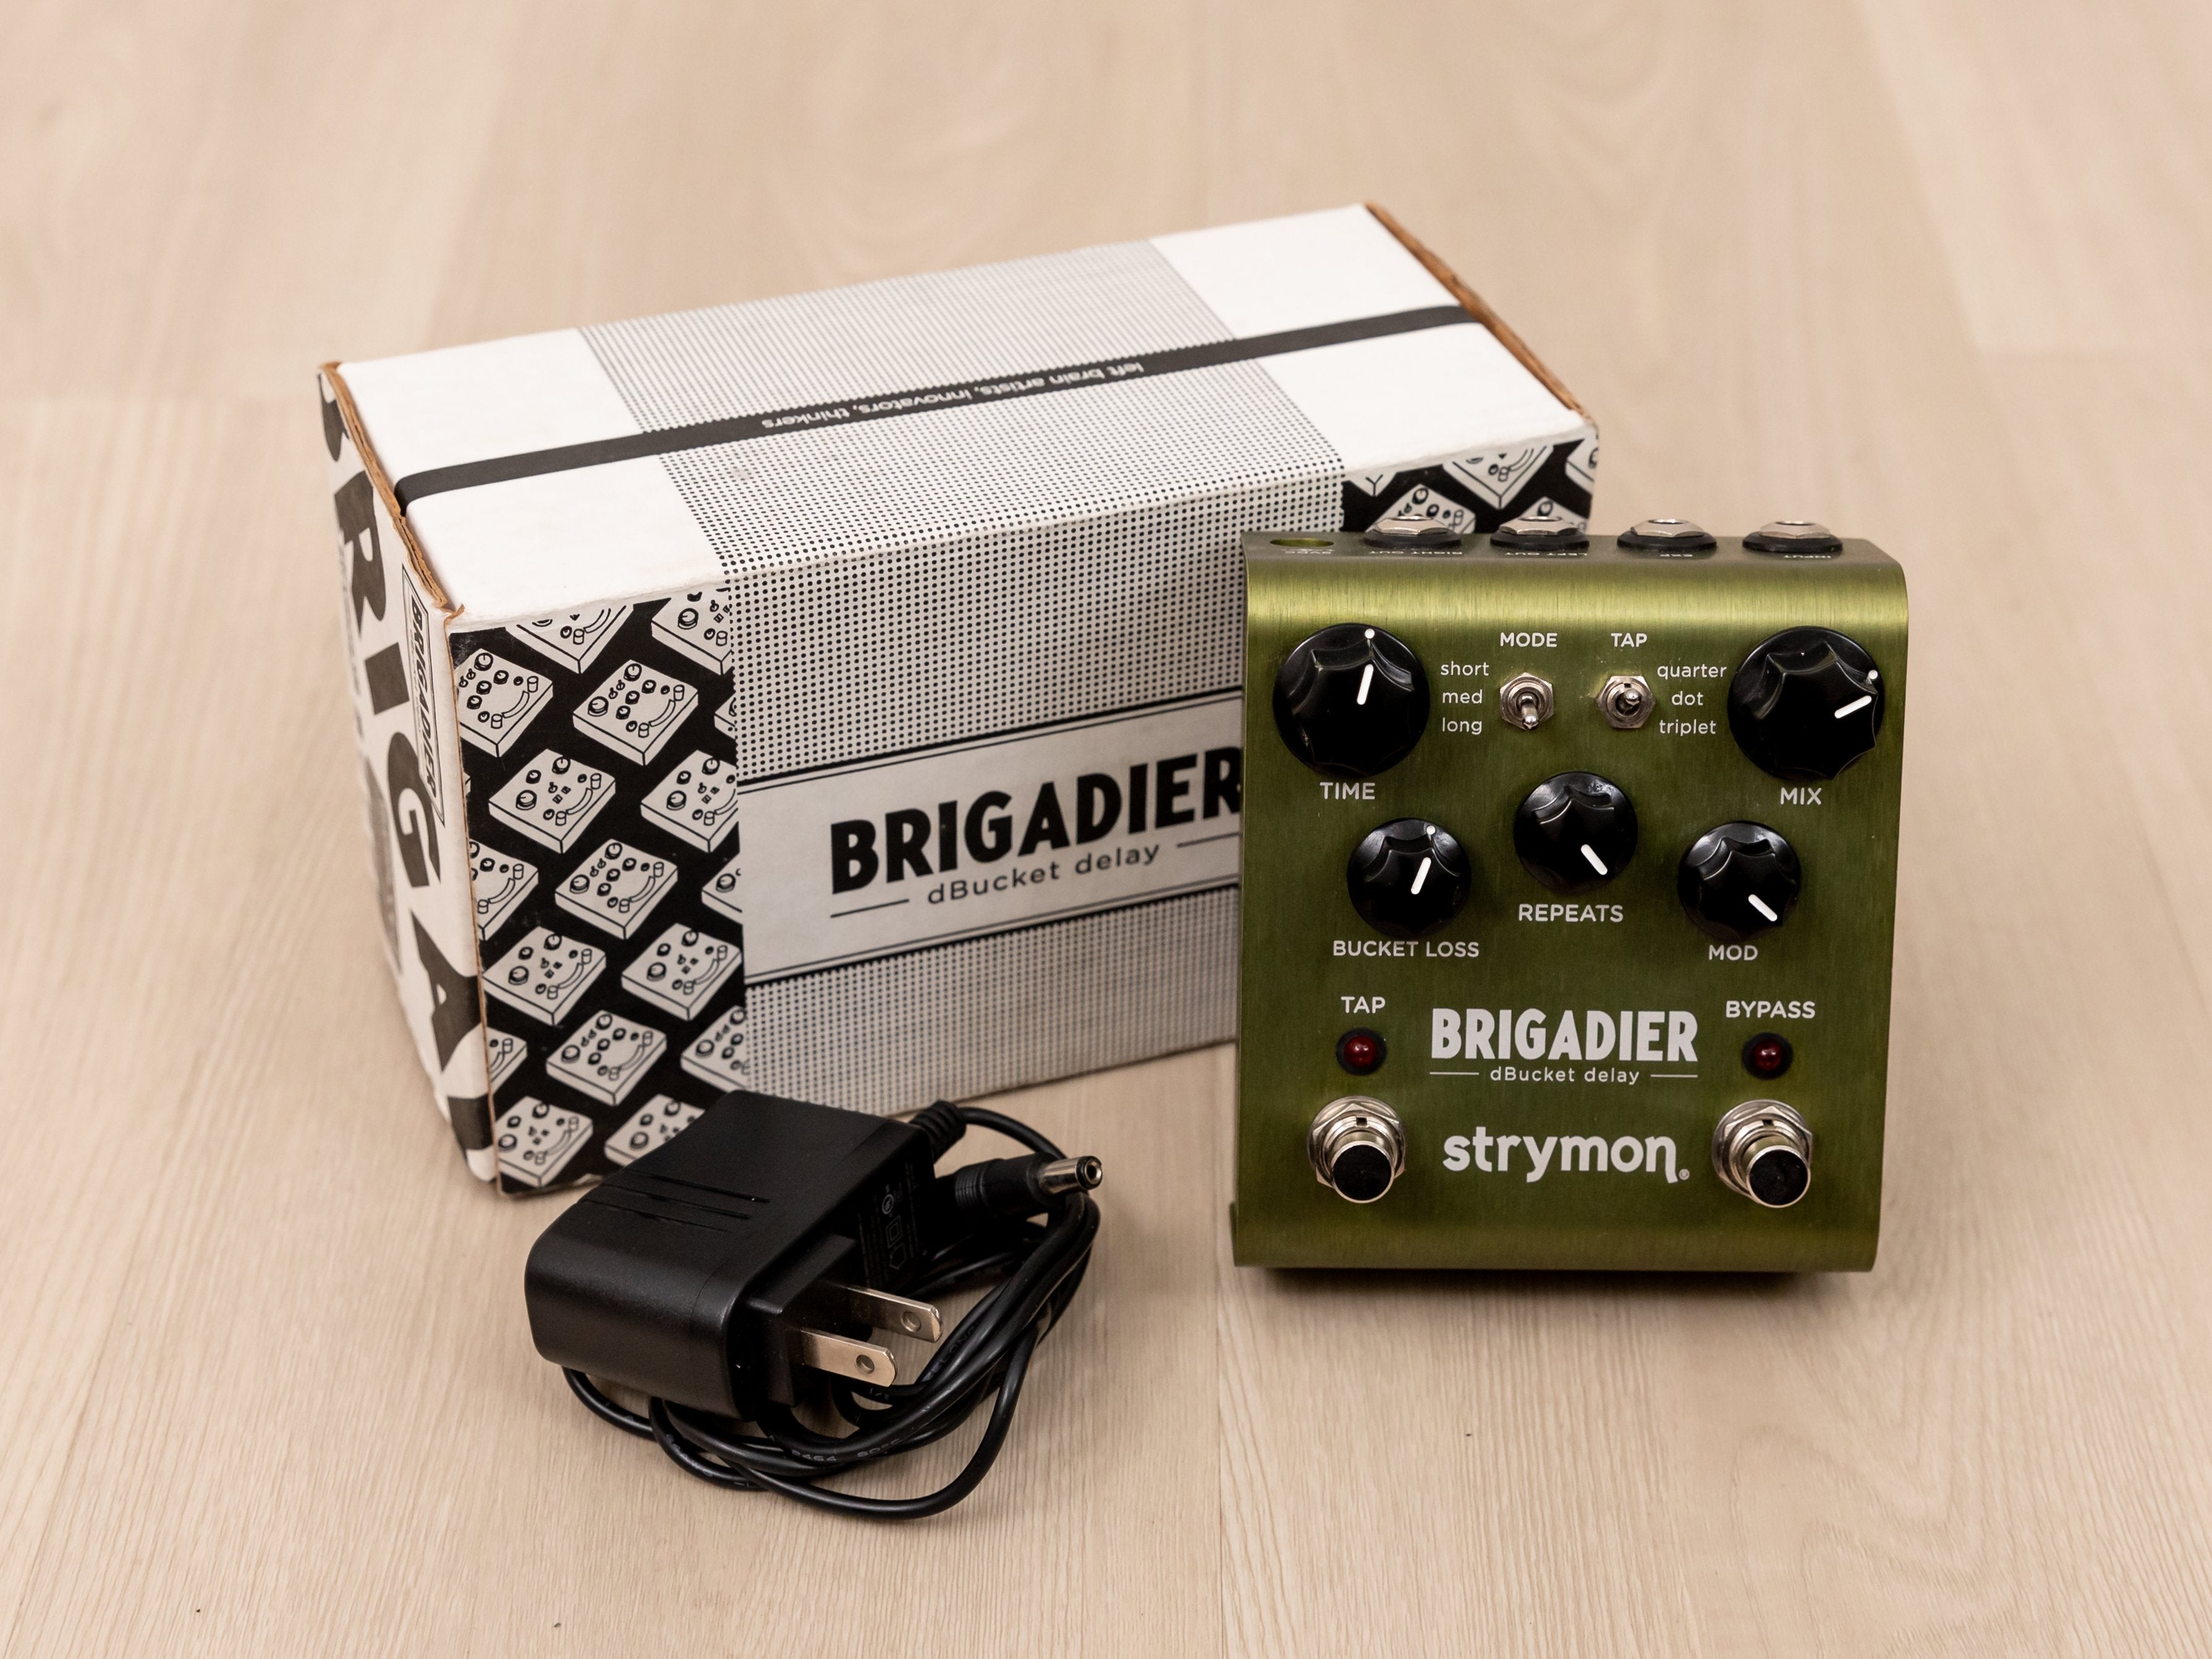 Strymon Brigadier dBucket Delay Guitar Effects Pedal w/ Box, Power Supply